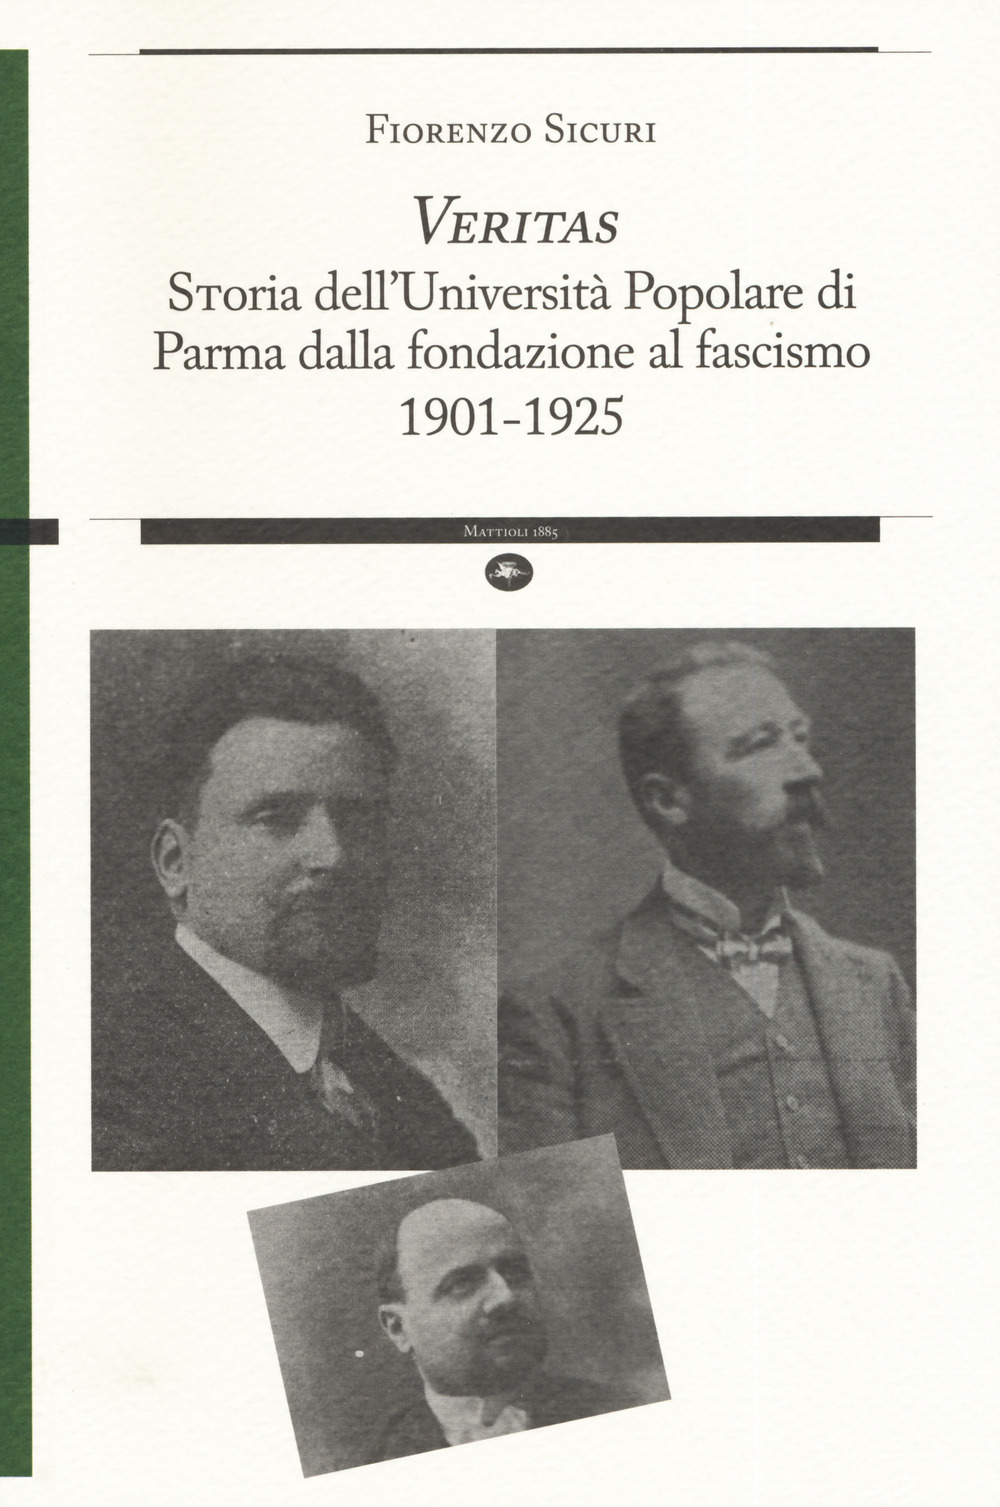 «Veritas». Storia dell'Università Popolare di Parma dalla fondazione al fascismo 1901-1925